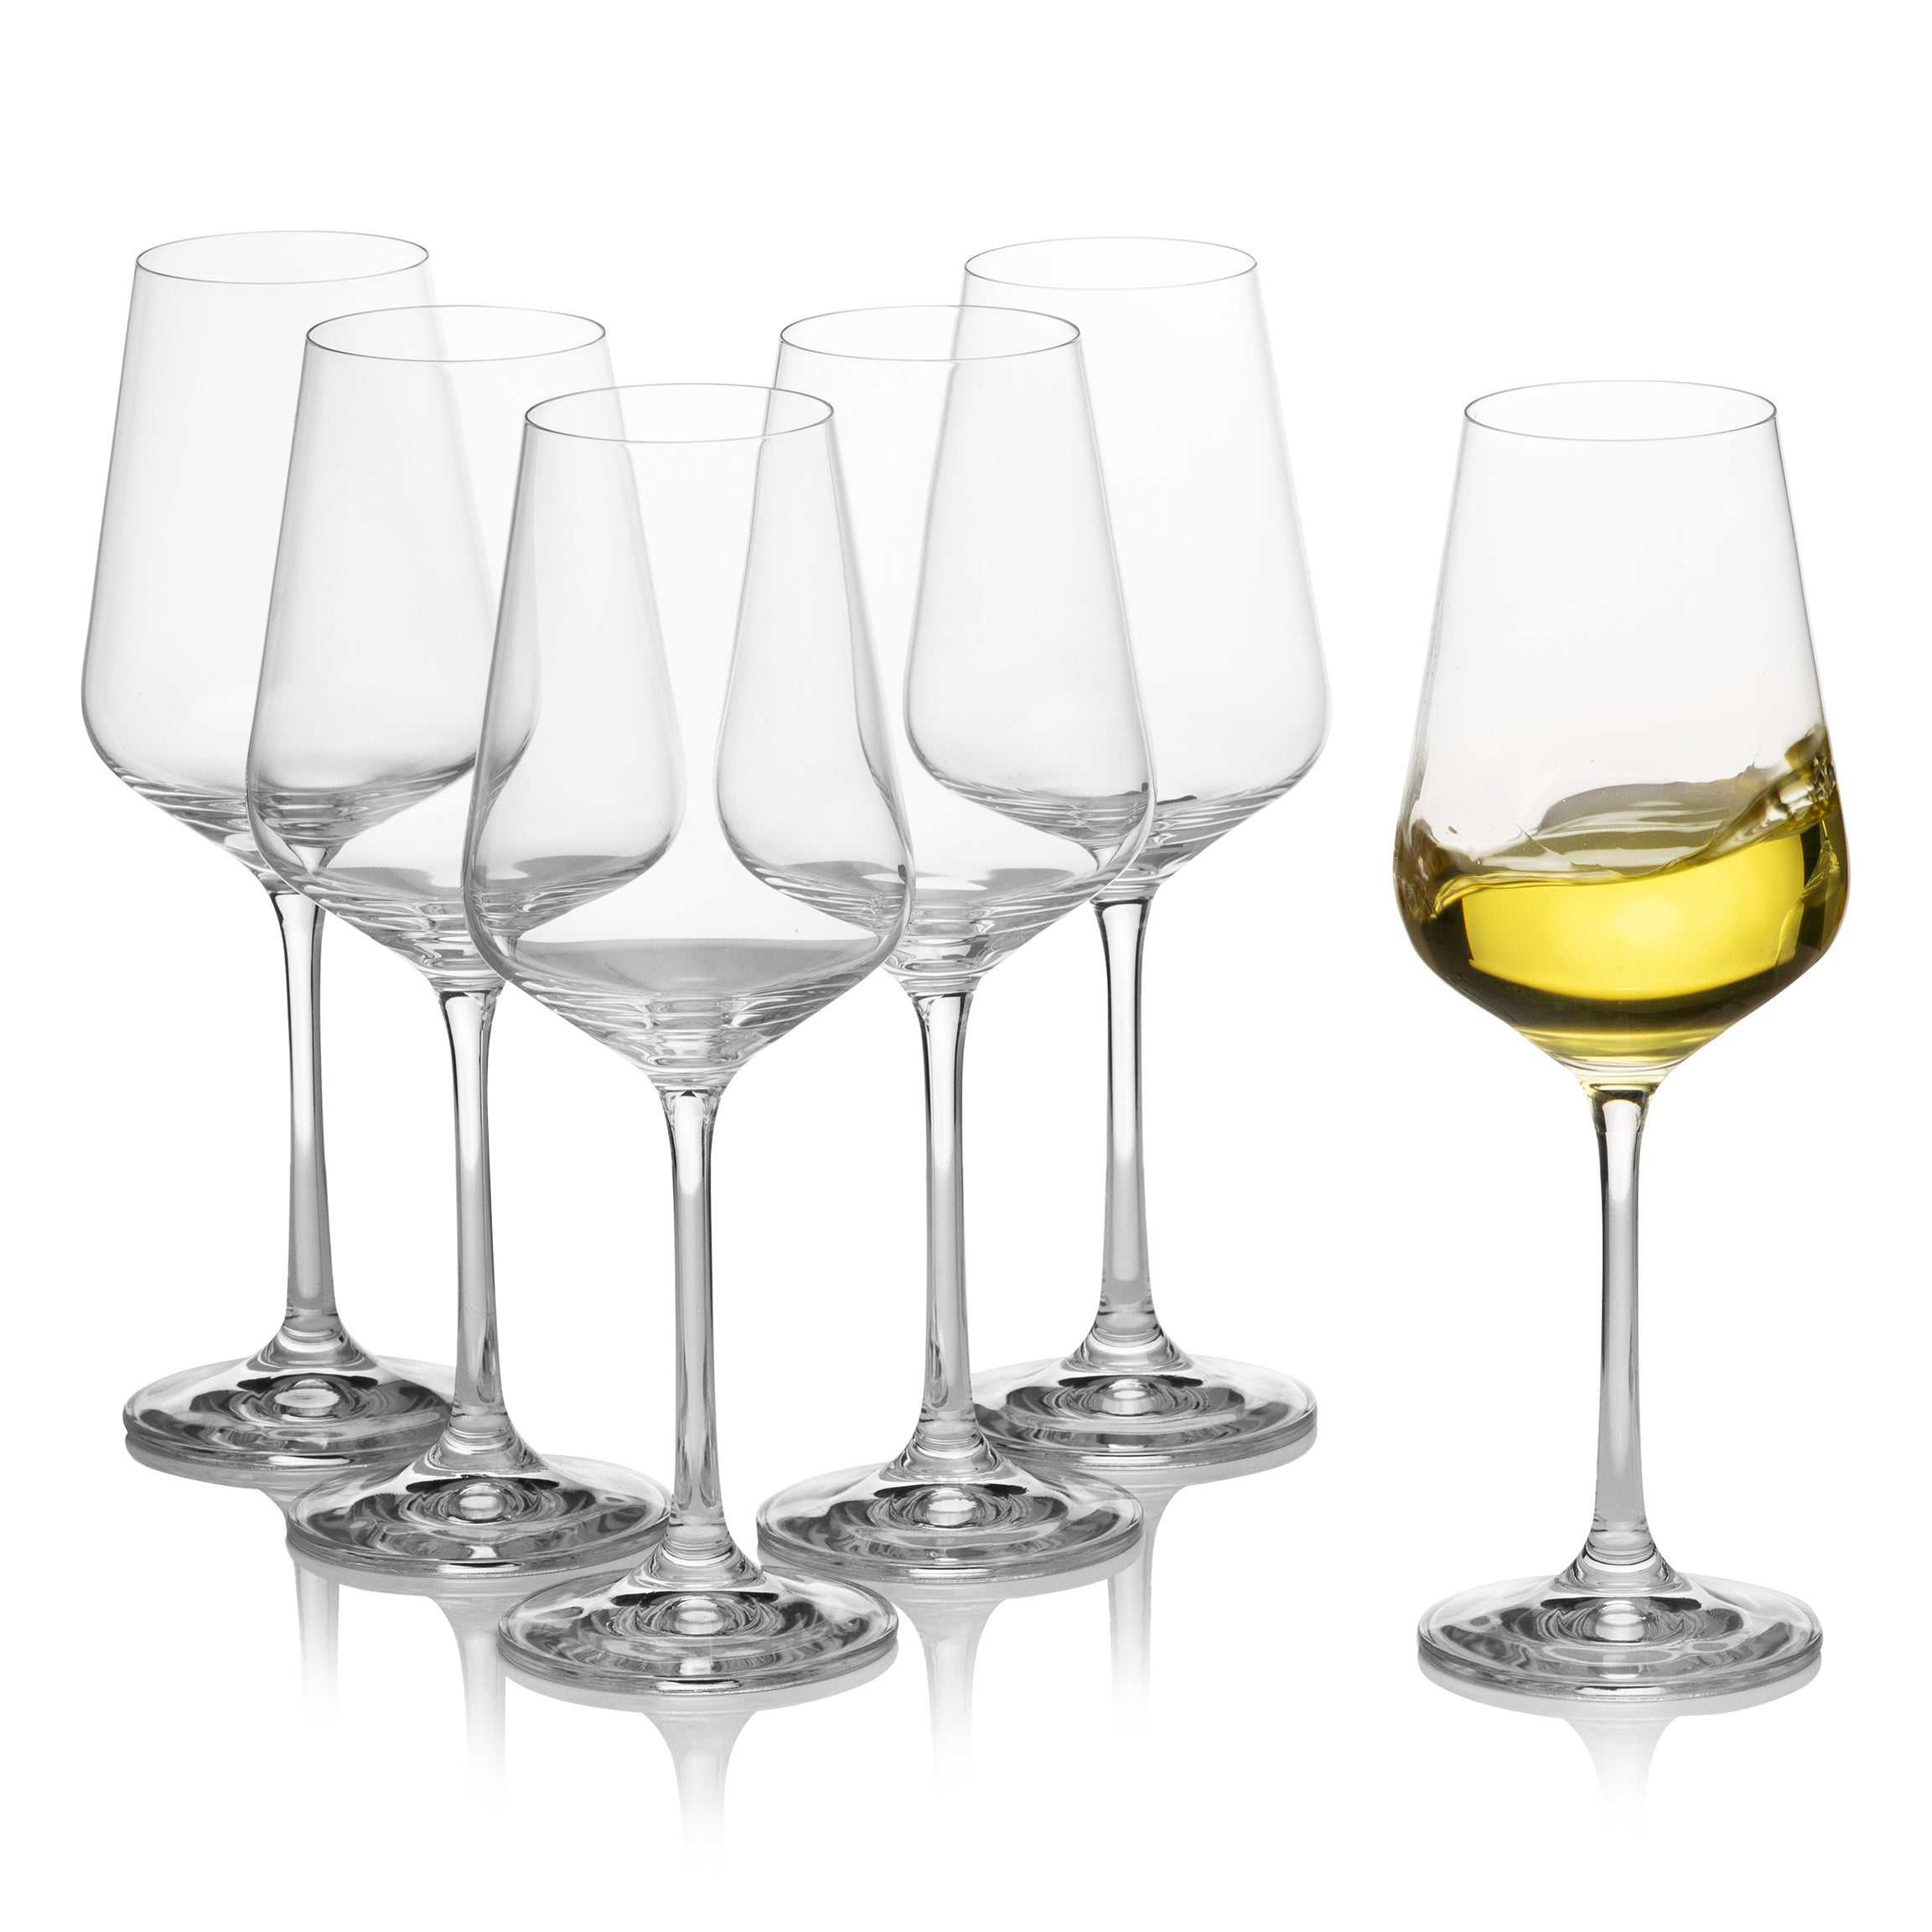 Sandra White Wine Glasses Set of 6 (8.4 oz)